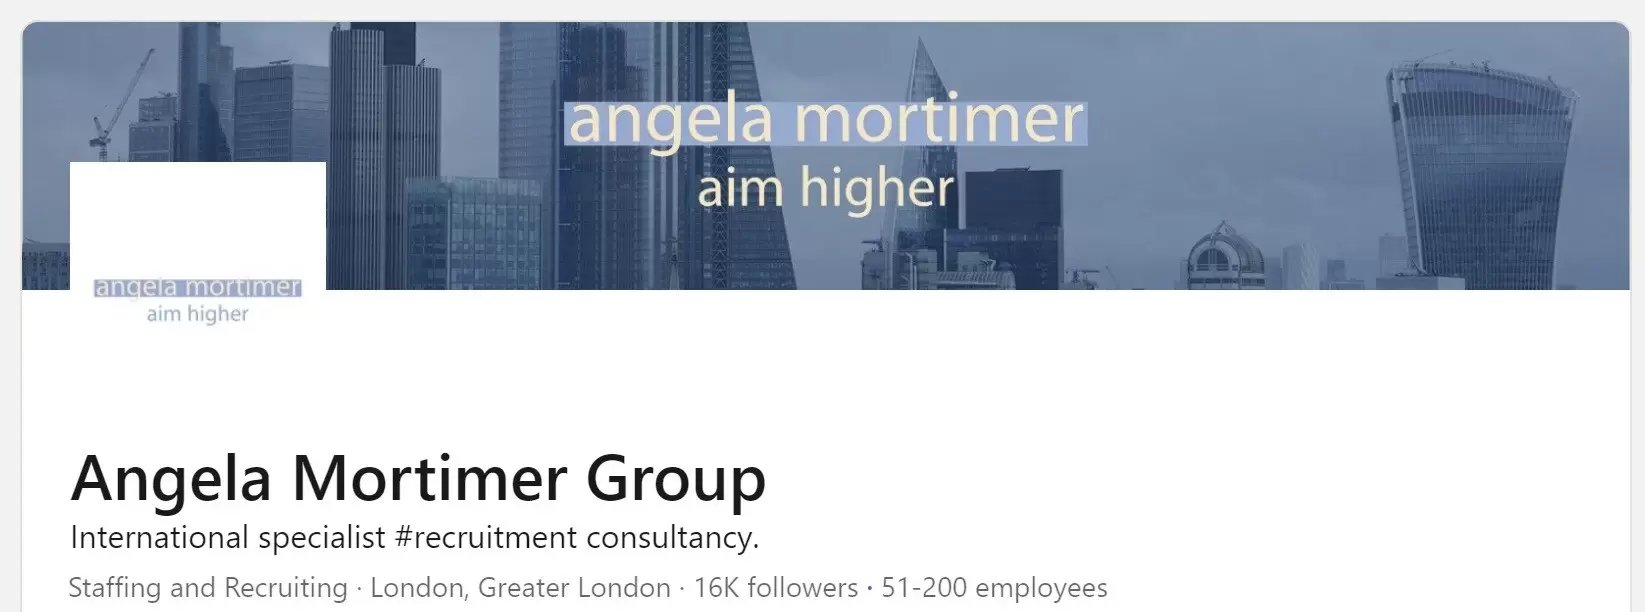 Angela Mortimer on LinkedIn